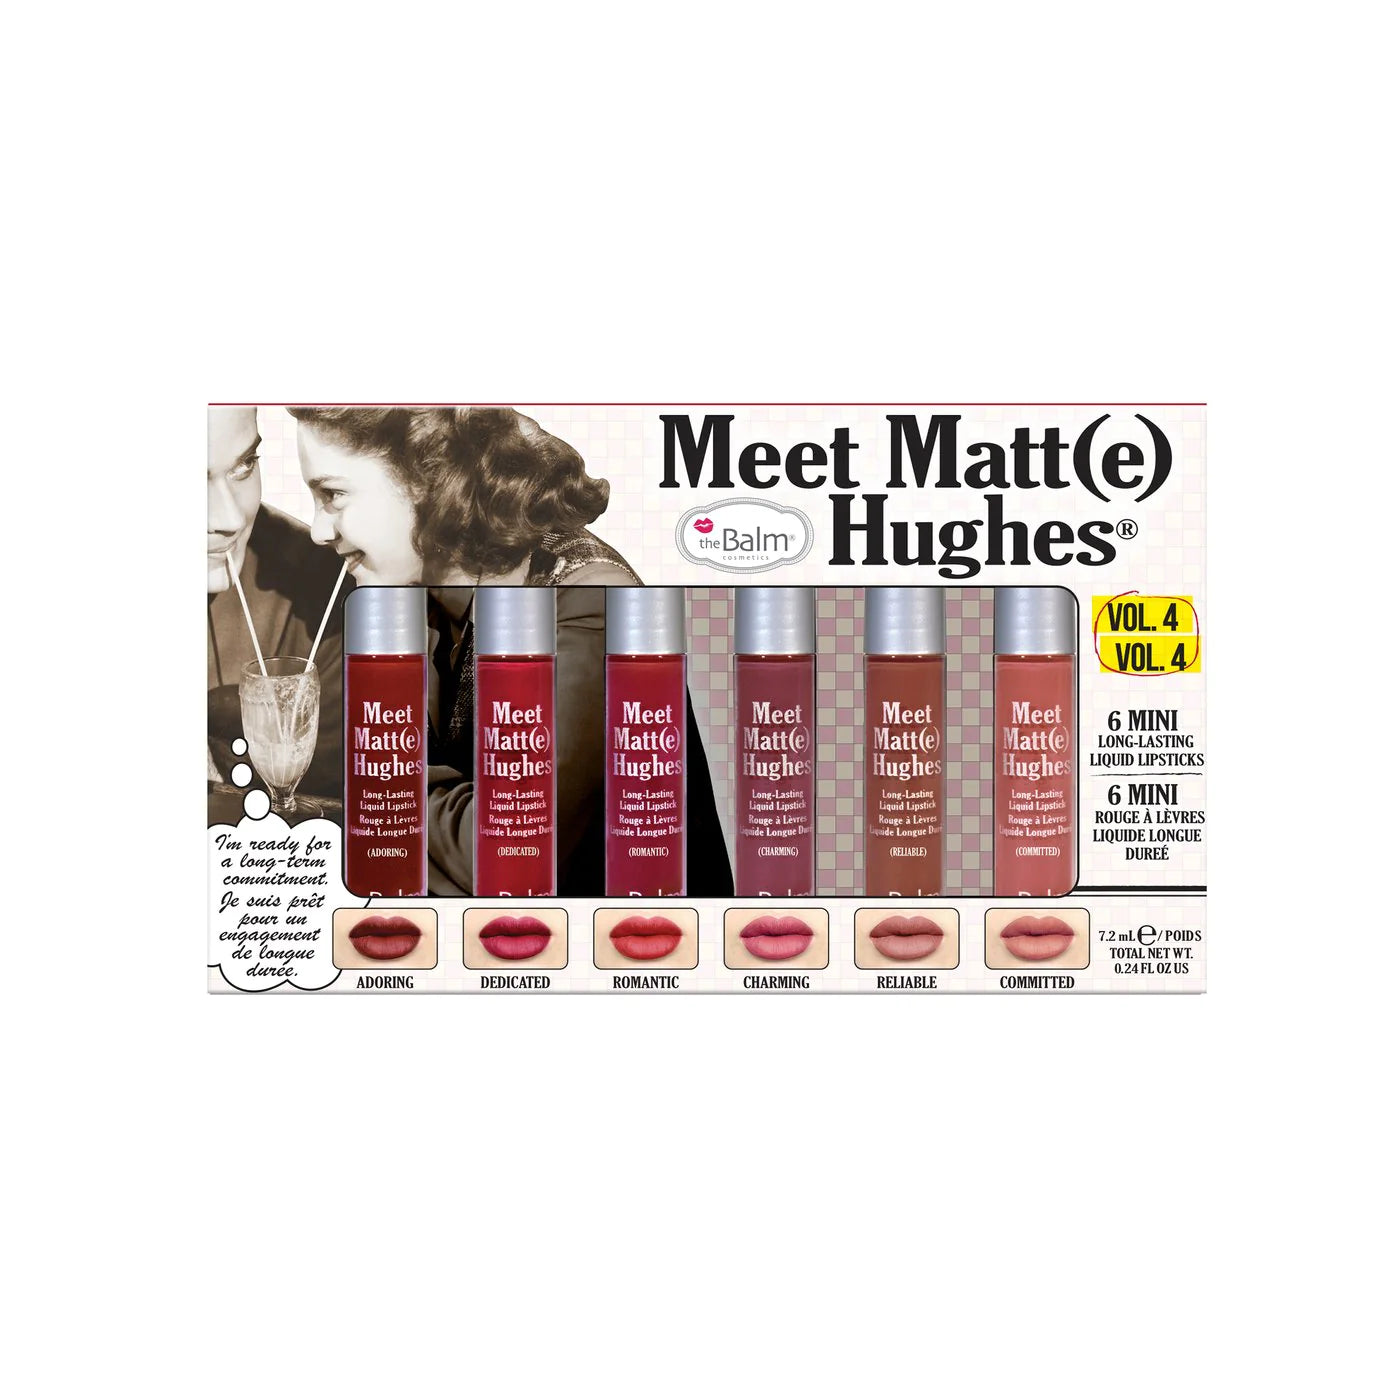 theBalm cosmetics MEET MATT(E) HUGES Vol. 4 (6 Mini Long-Lasting Liquid Lipsticks)